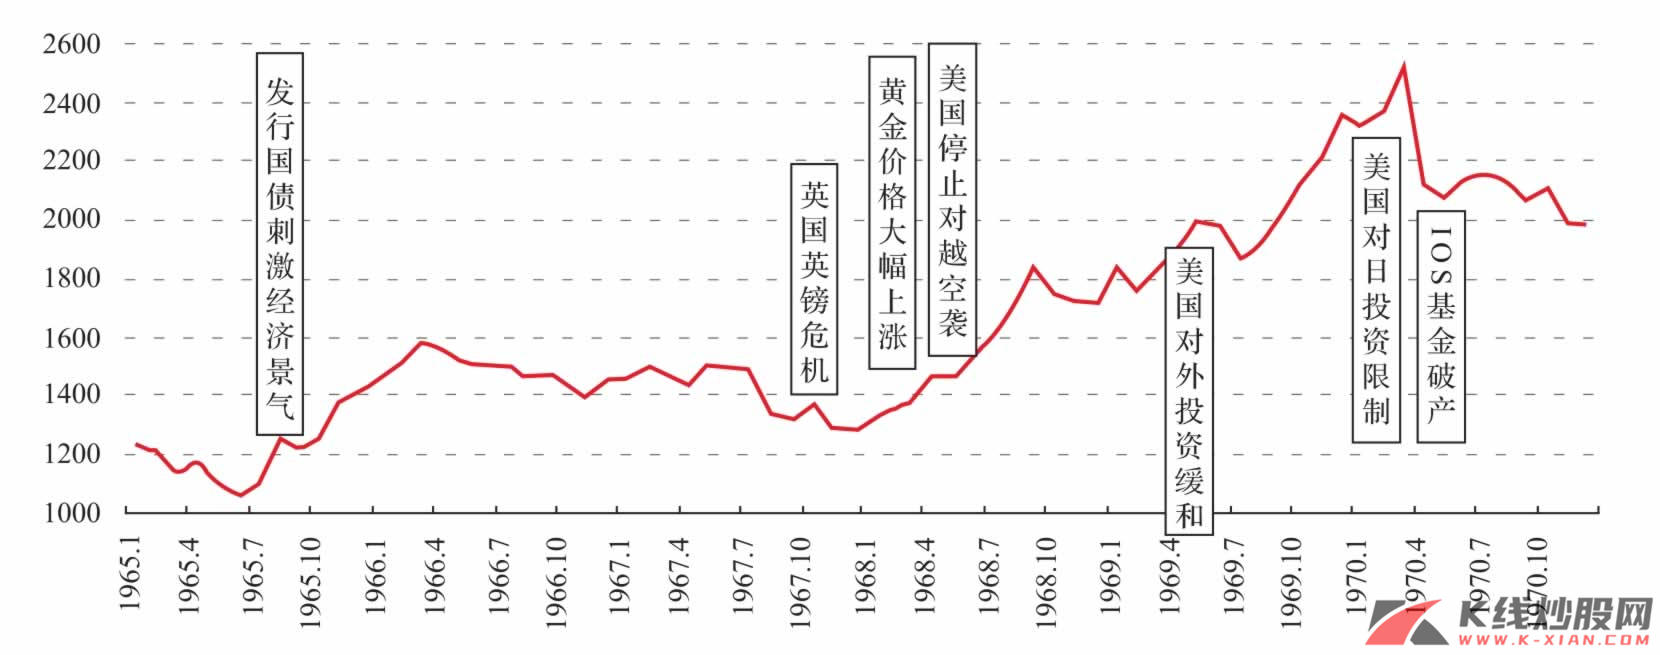 日本20世纪60年代后期市场走势